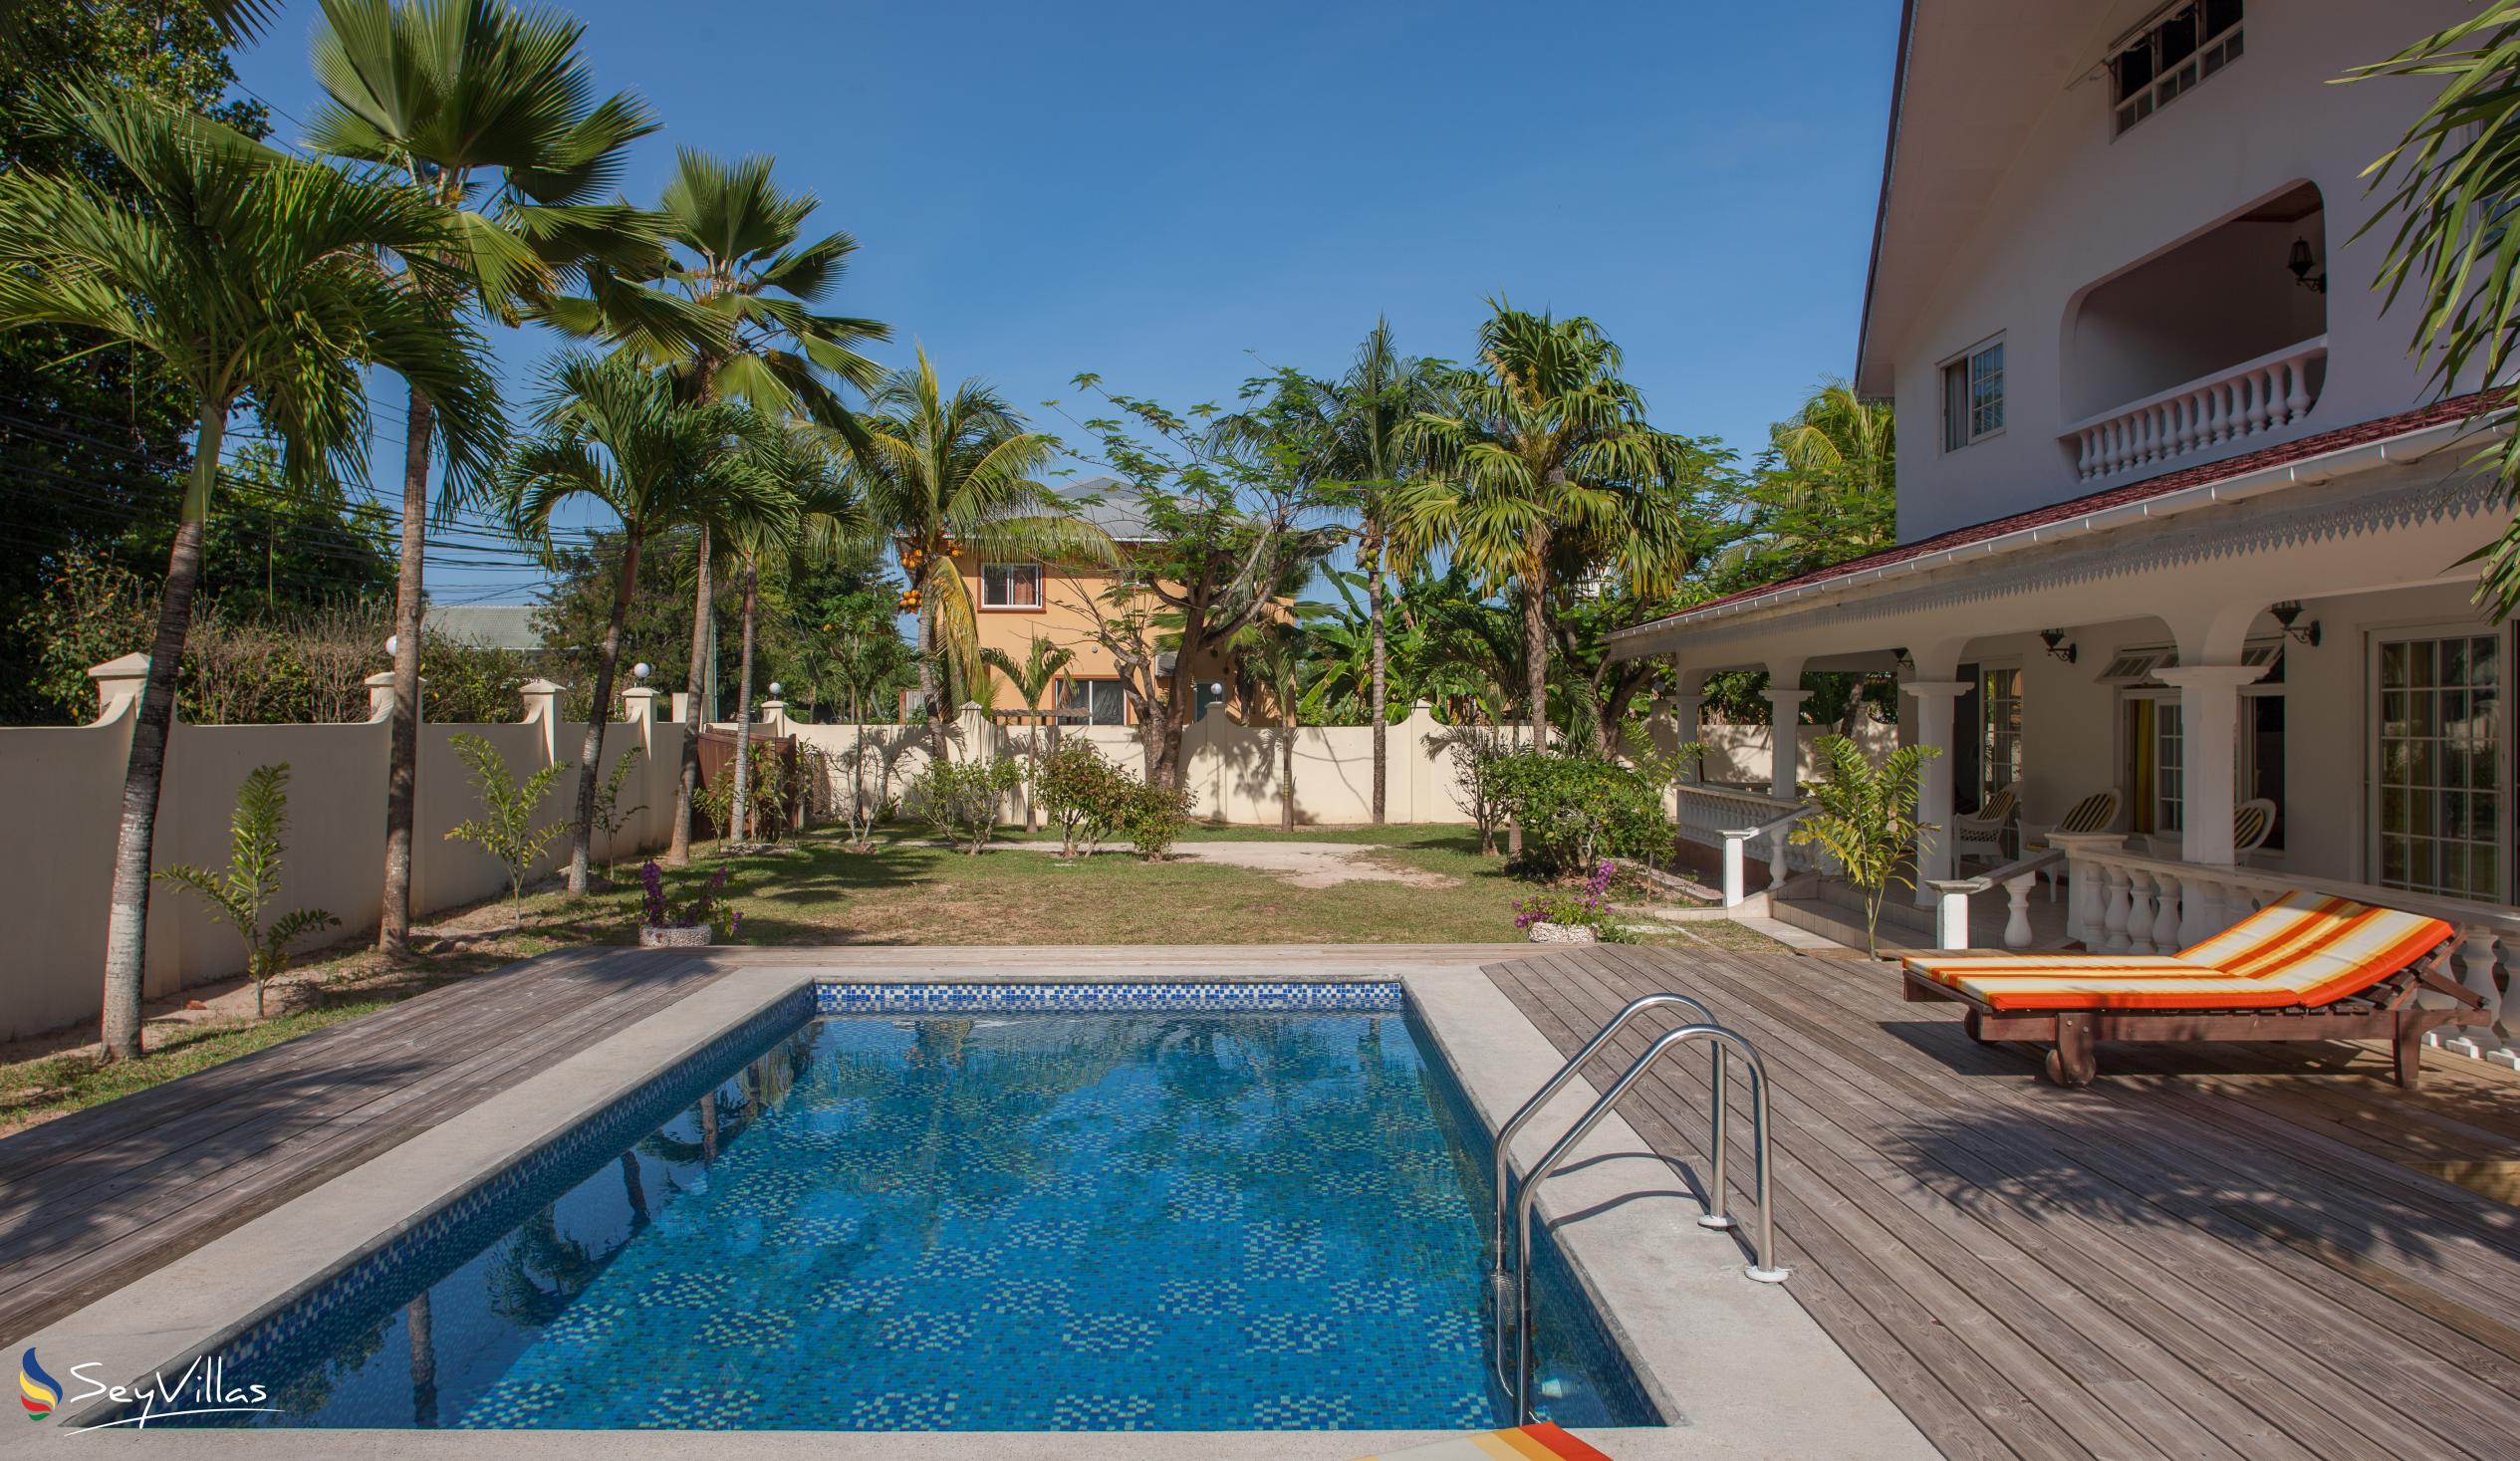 Foto 7: Villa Confort - Esterno - Praslin (Seychelles)